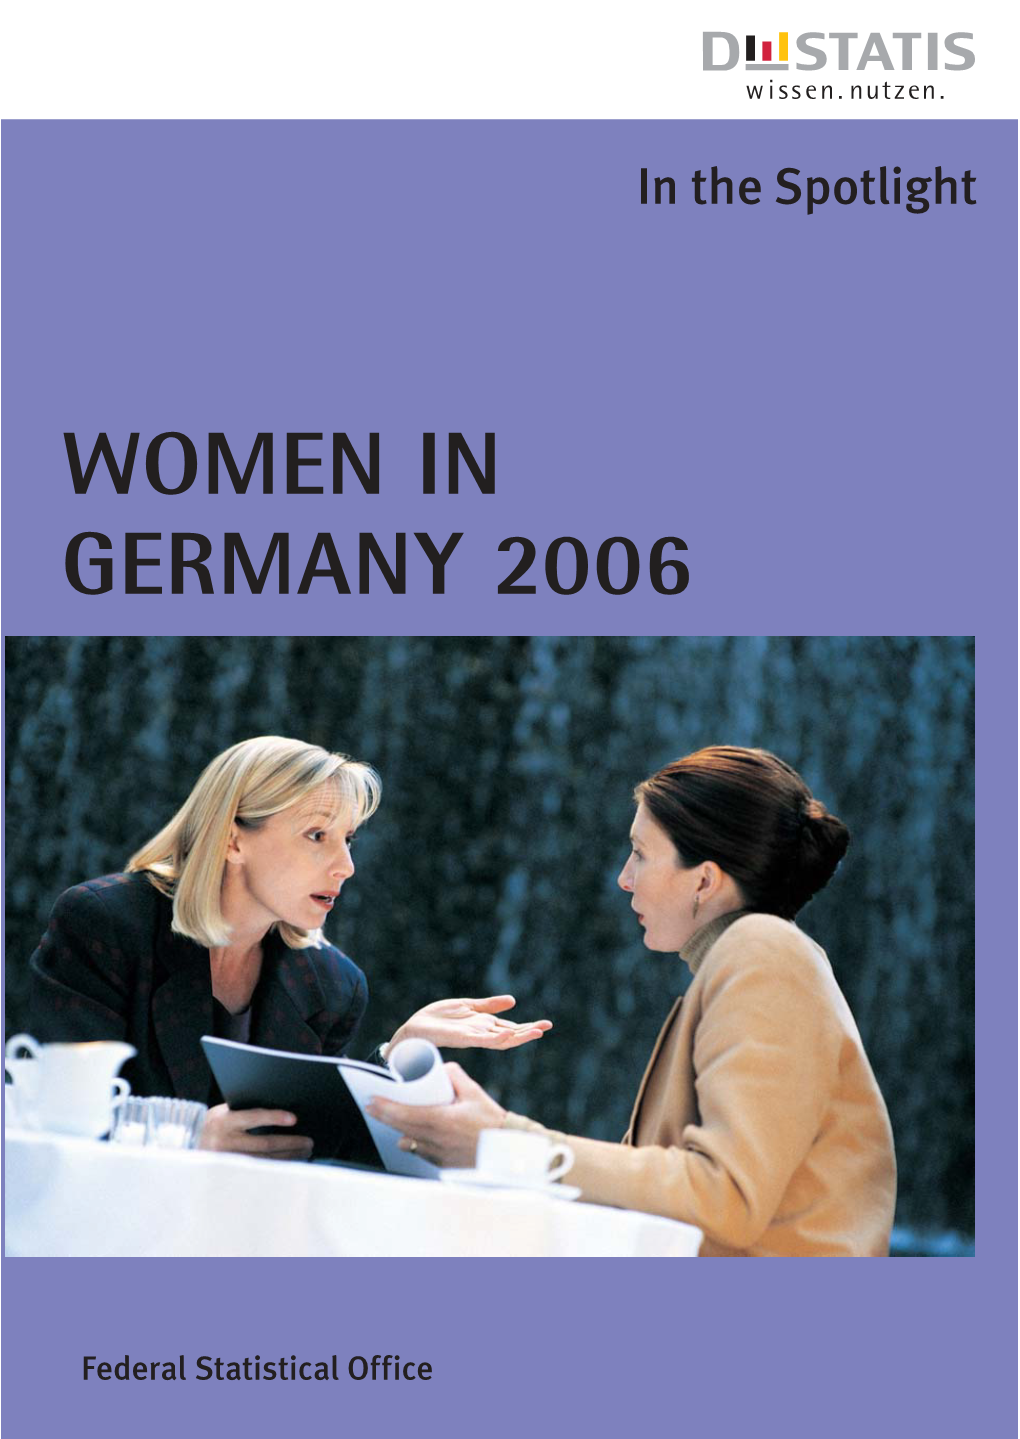 WOMEN in GERMANY 2006